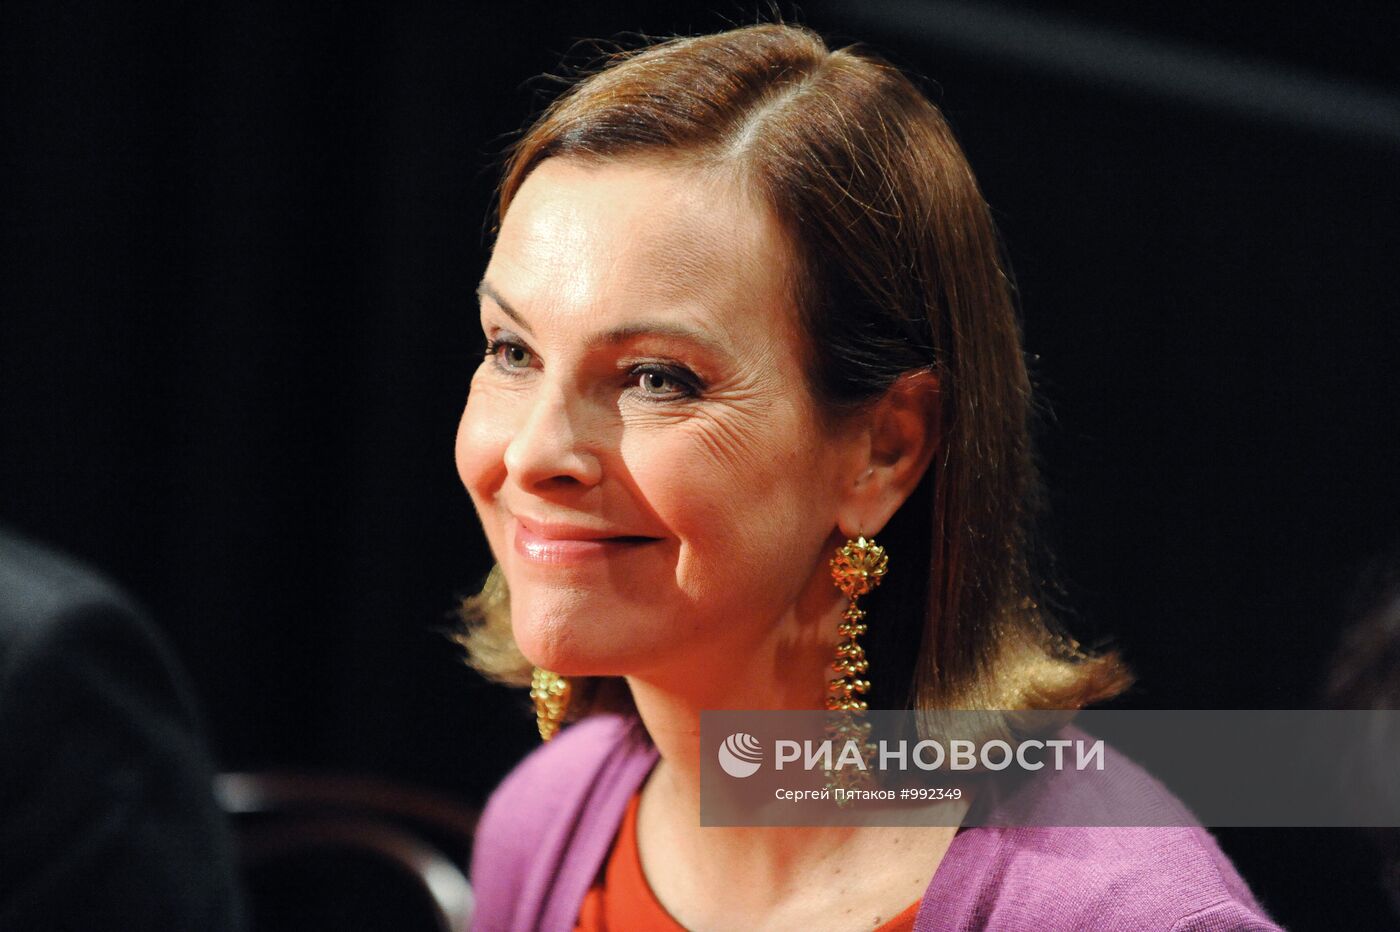 Кароль Буке на фестивале "Французское кино сегодня" в Москве